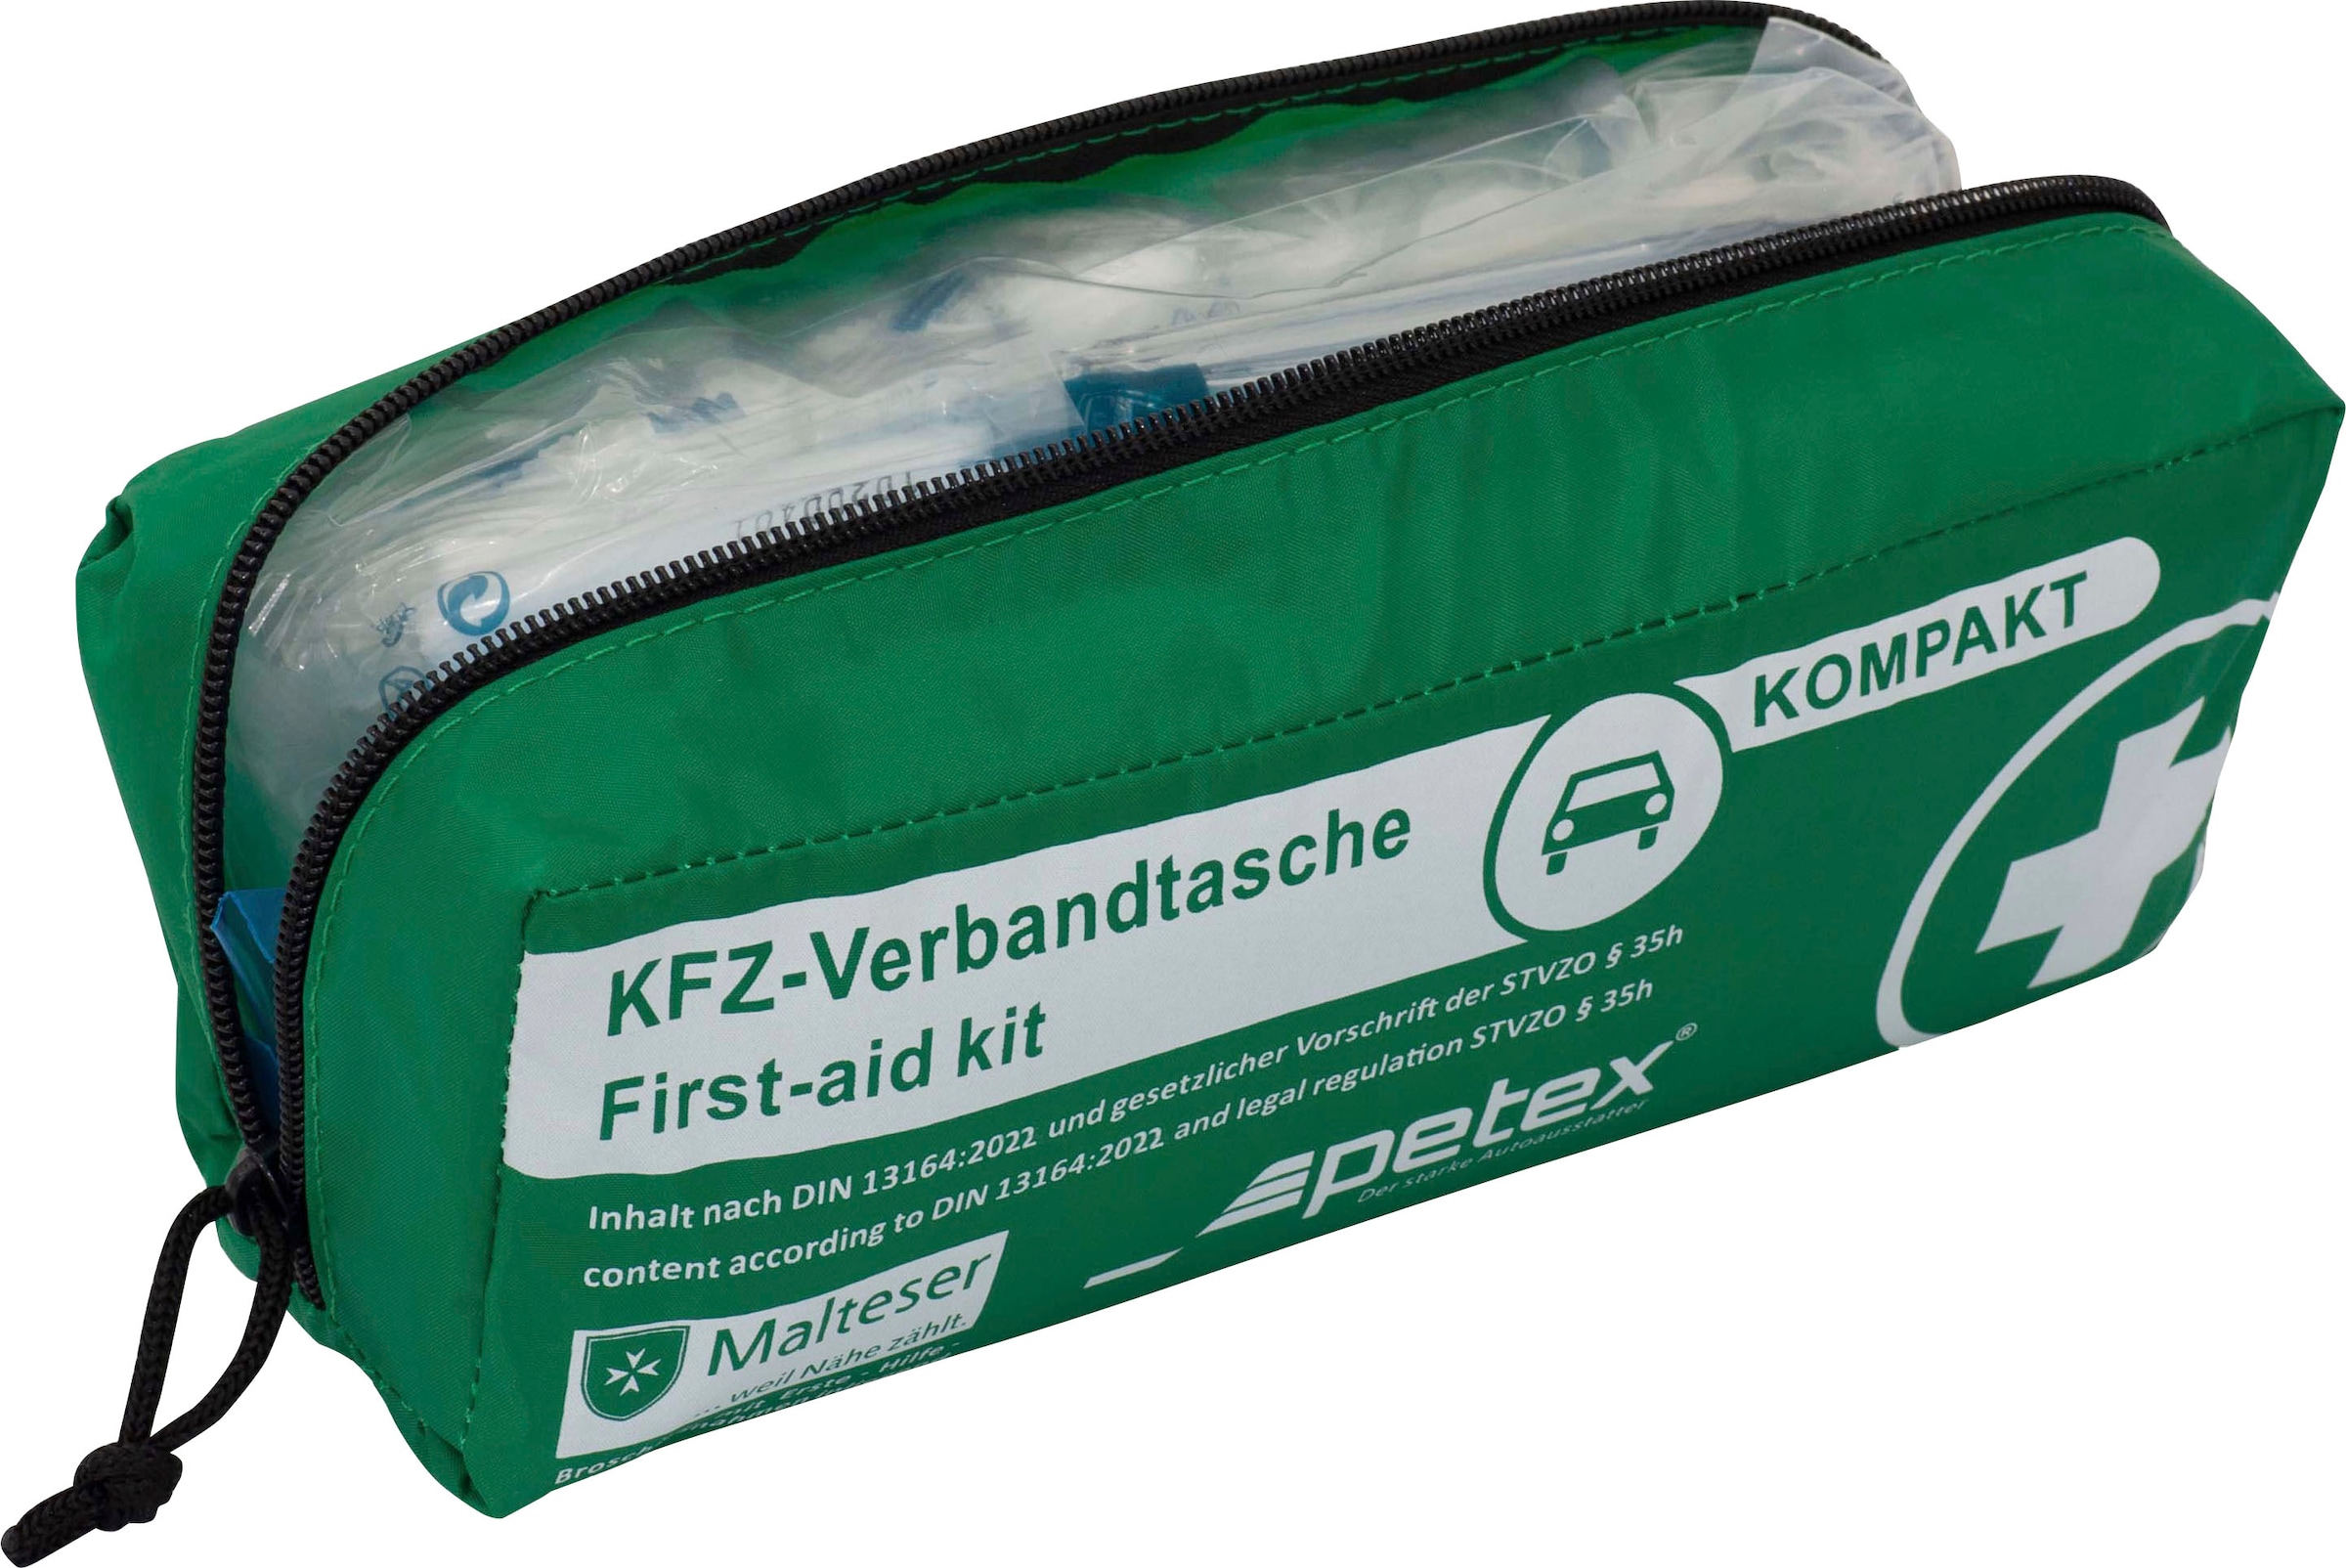 KFZ Verbandkasten / Verbandtasche nach DIN 13164